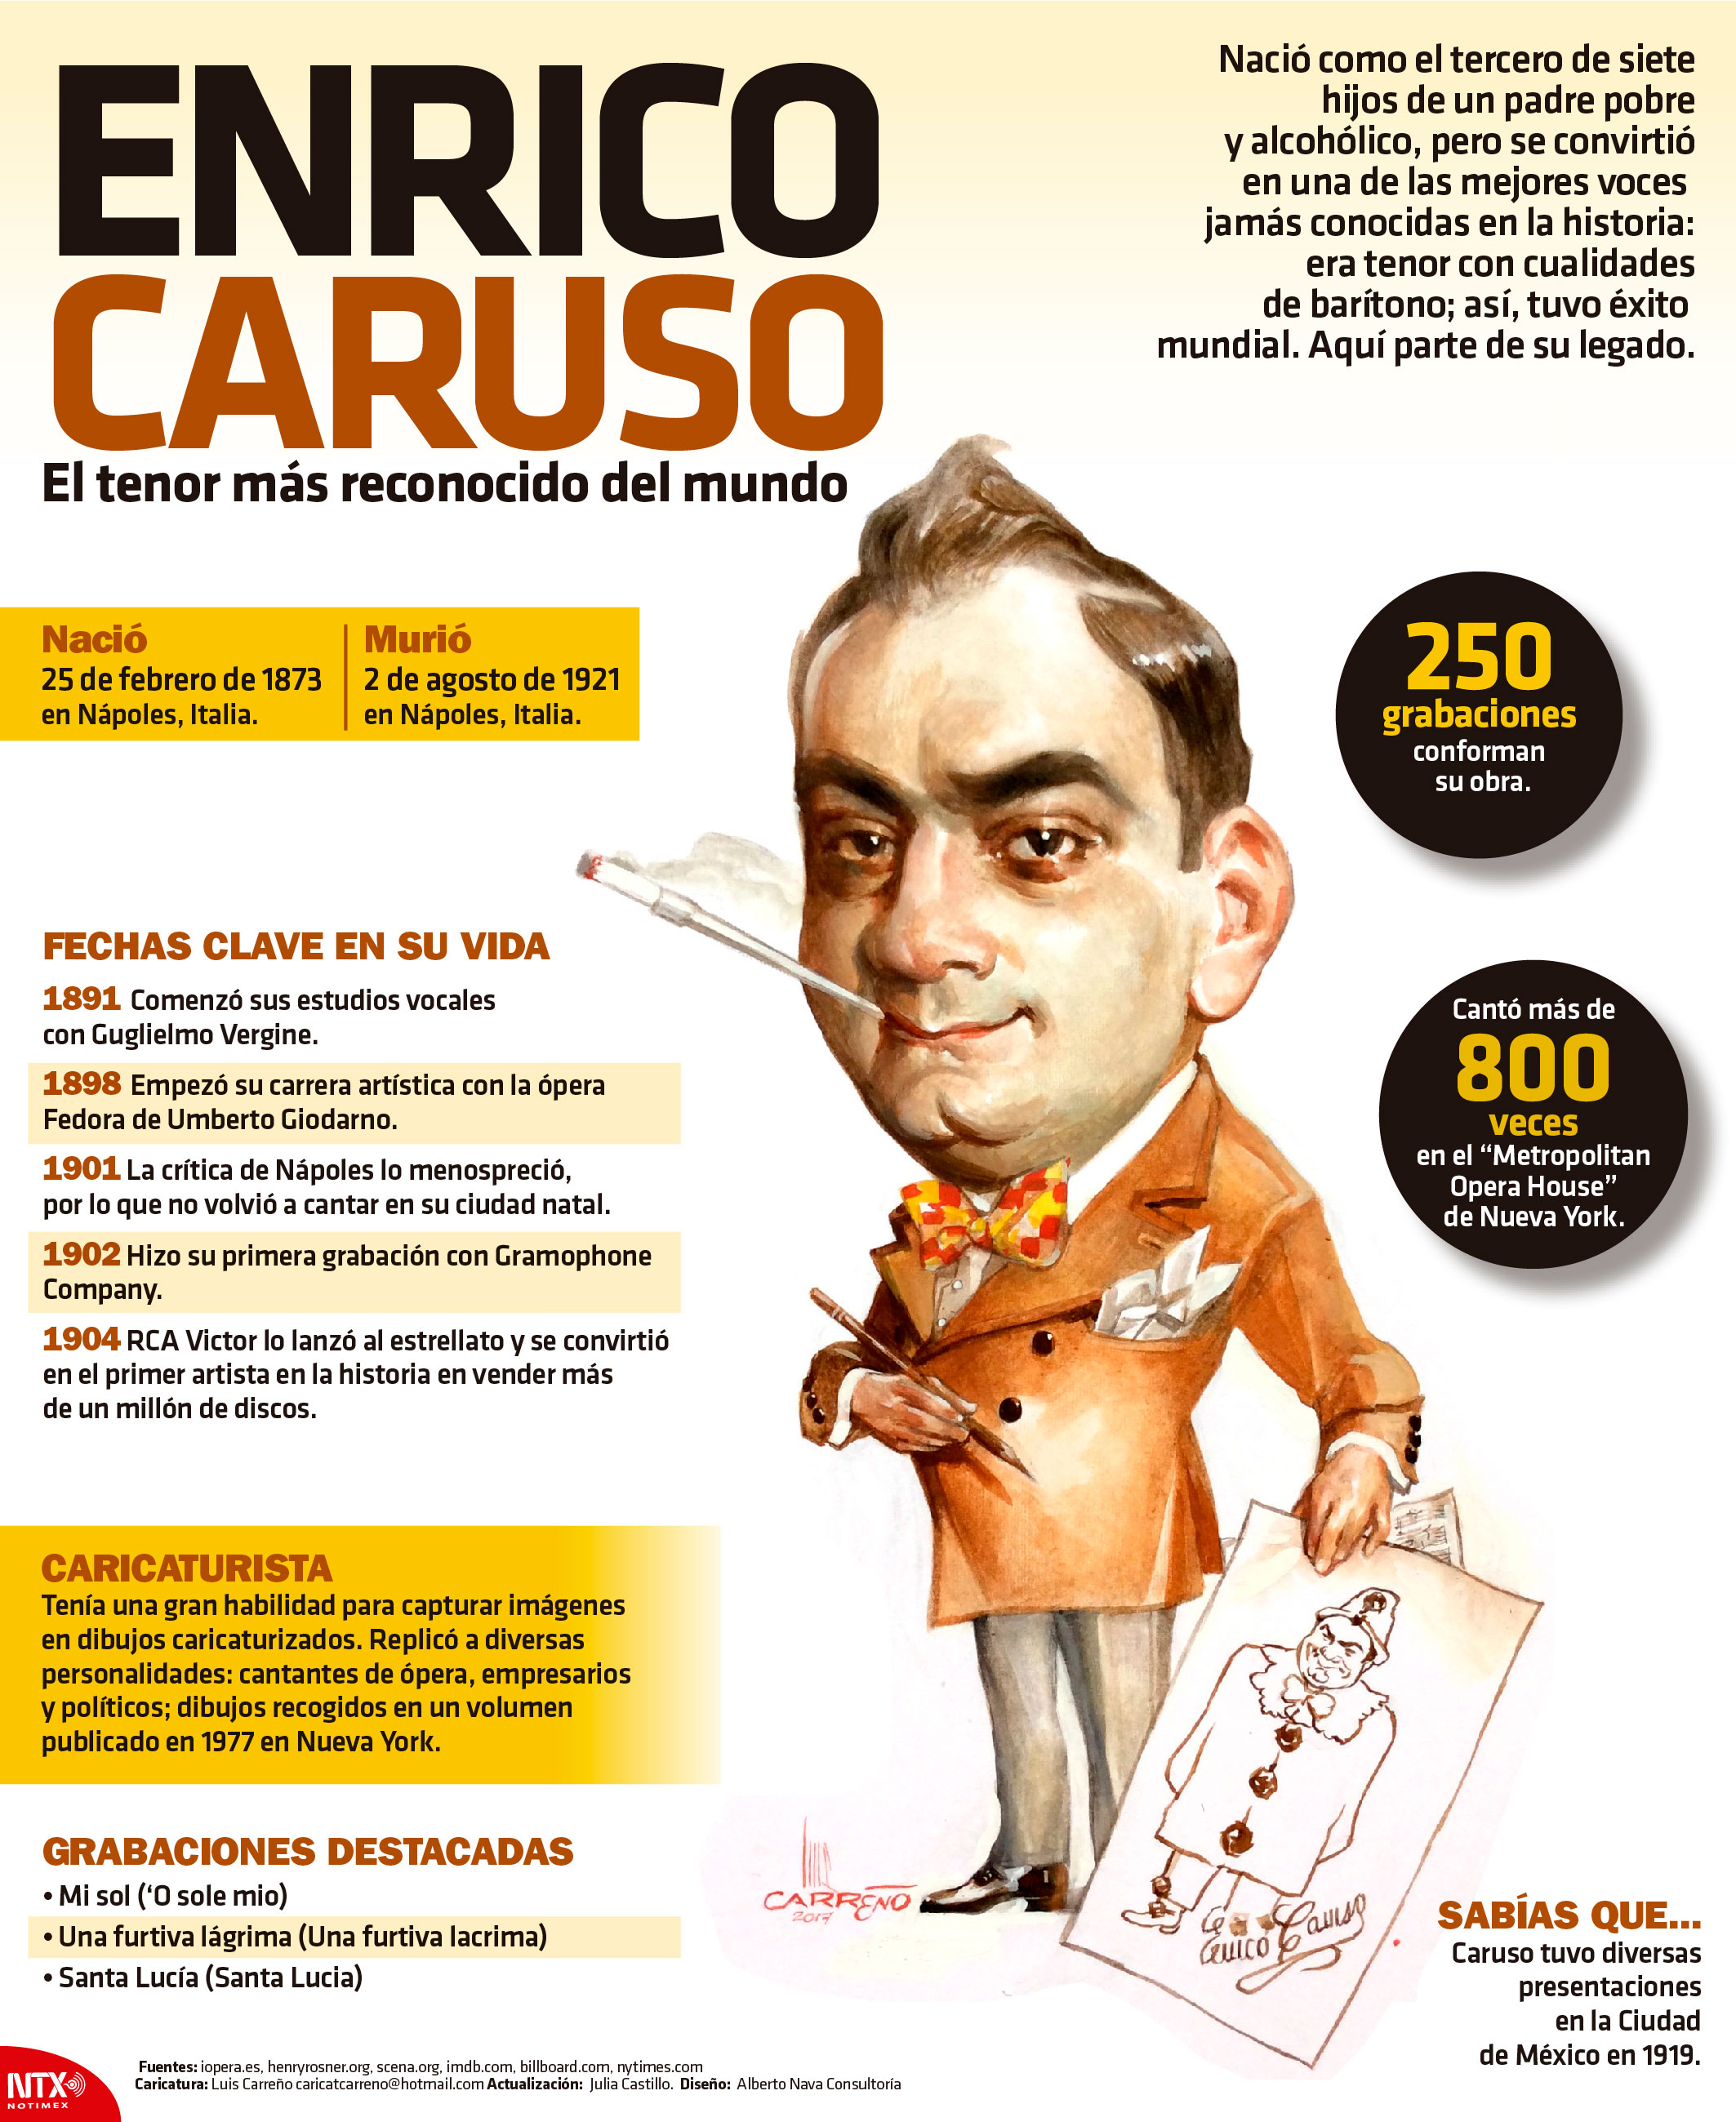 Enrico Caruso, el tenor ms reconocido del mundo